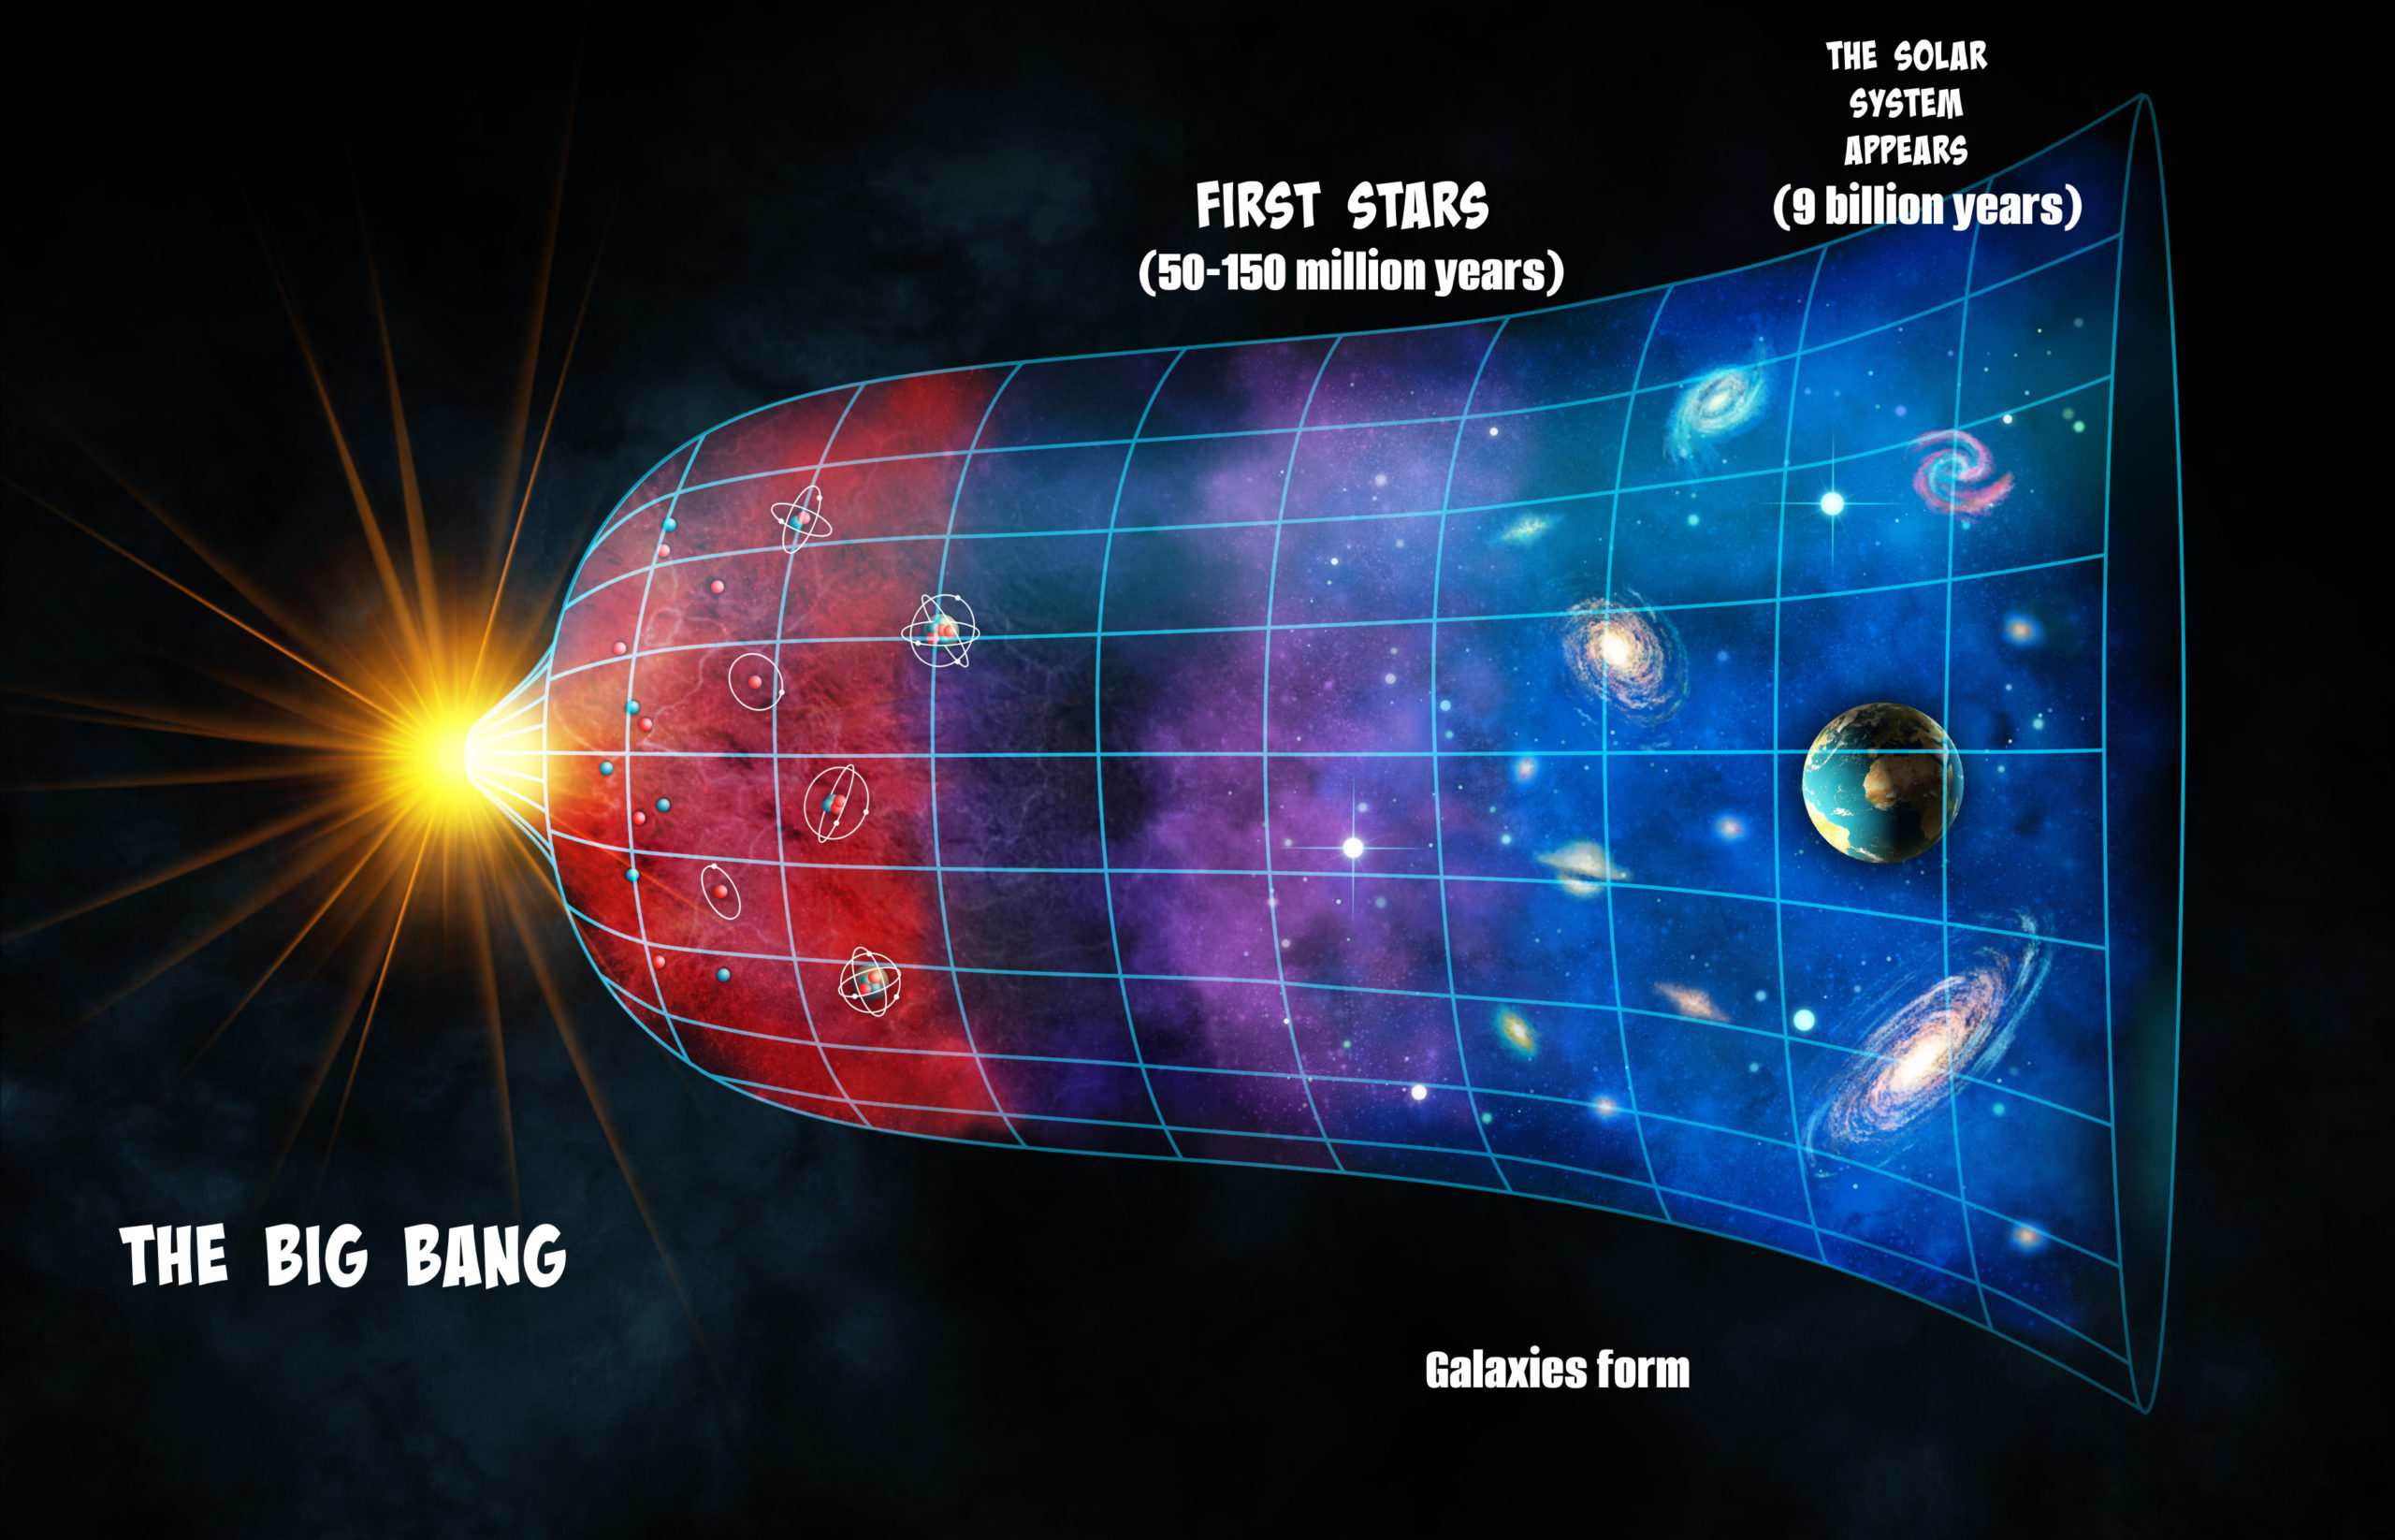 big bang theory astronomy printables